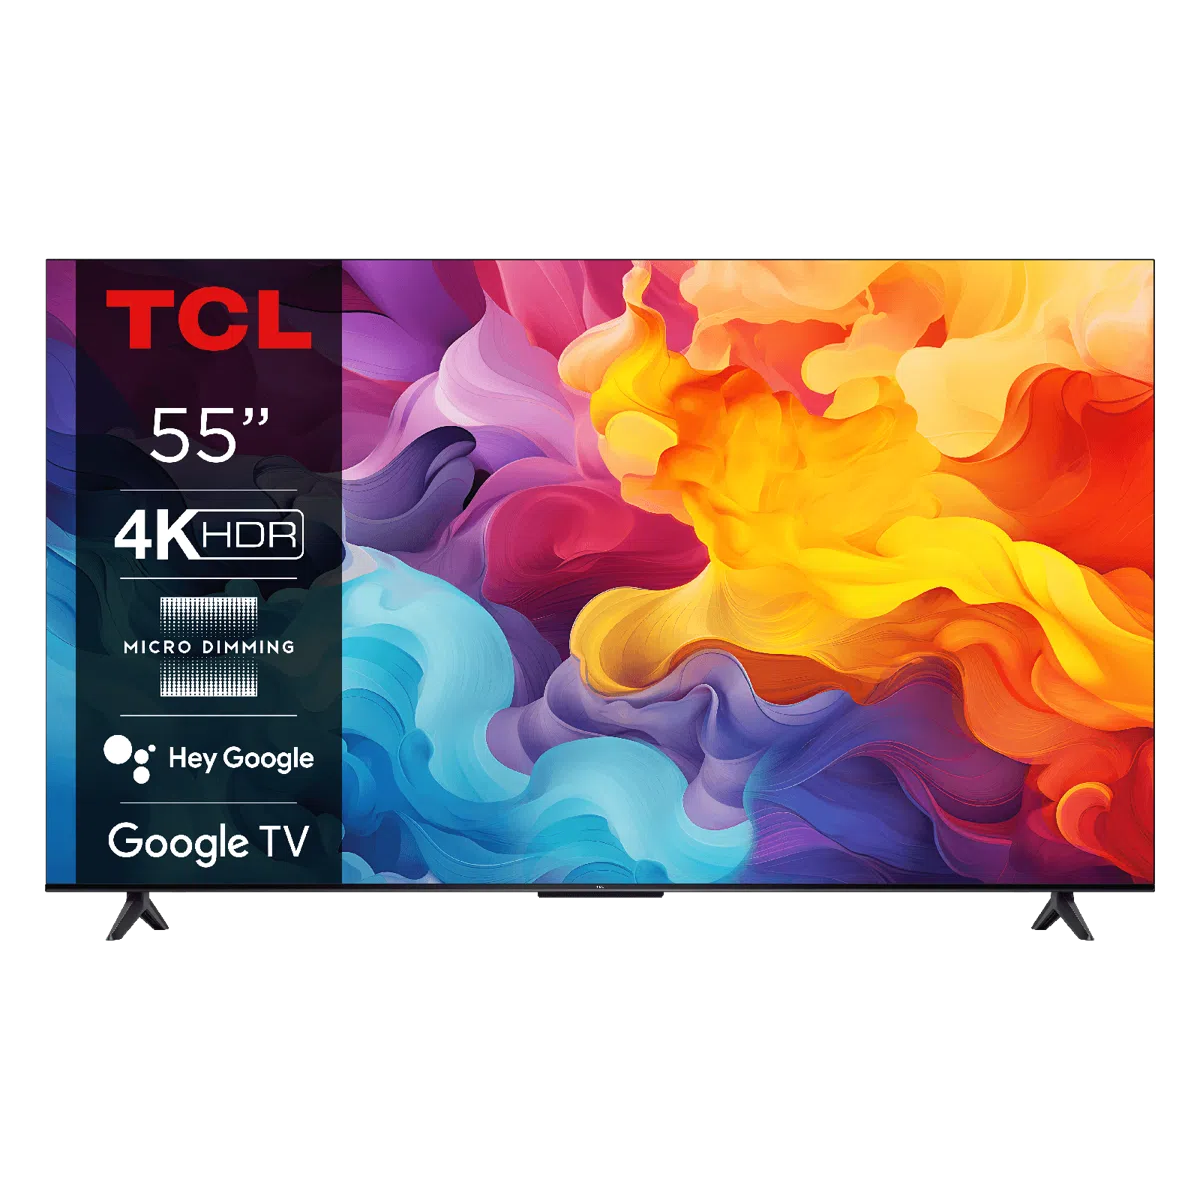 TCL TELEVISION LED TV 4K UHD SMART 55